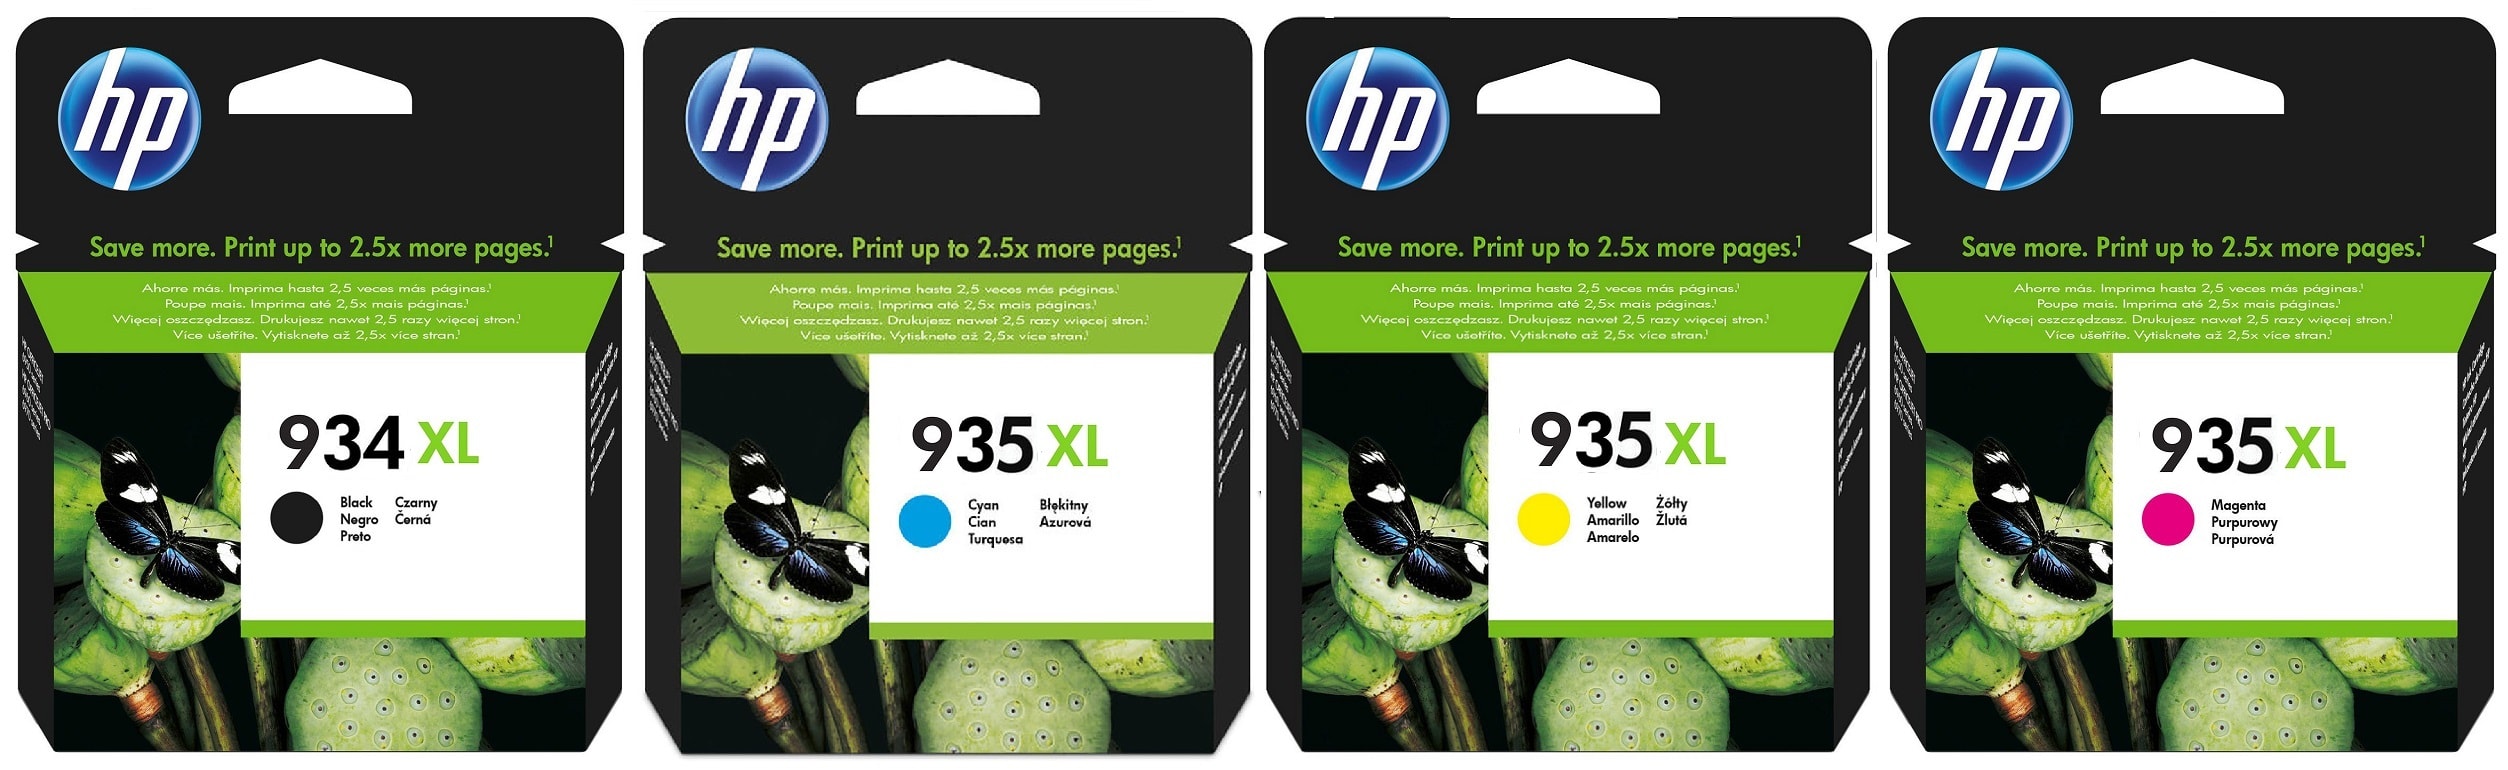 Картриджи hp 934xl, hp 935xl для HP Officejet Pro 6230. Купить комплект оригинальных картриджей.